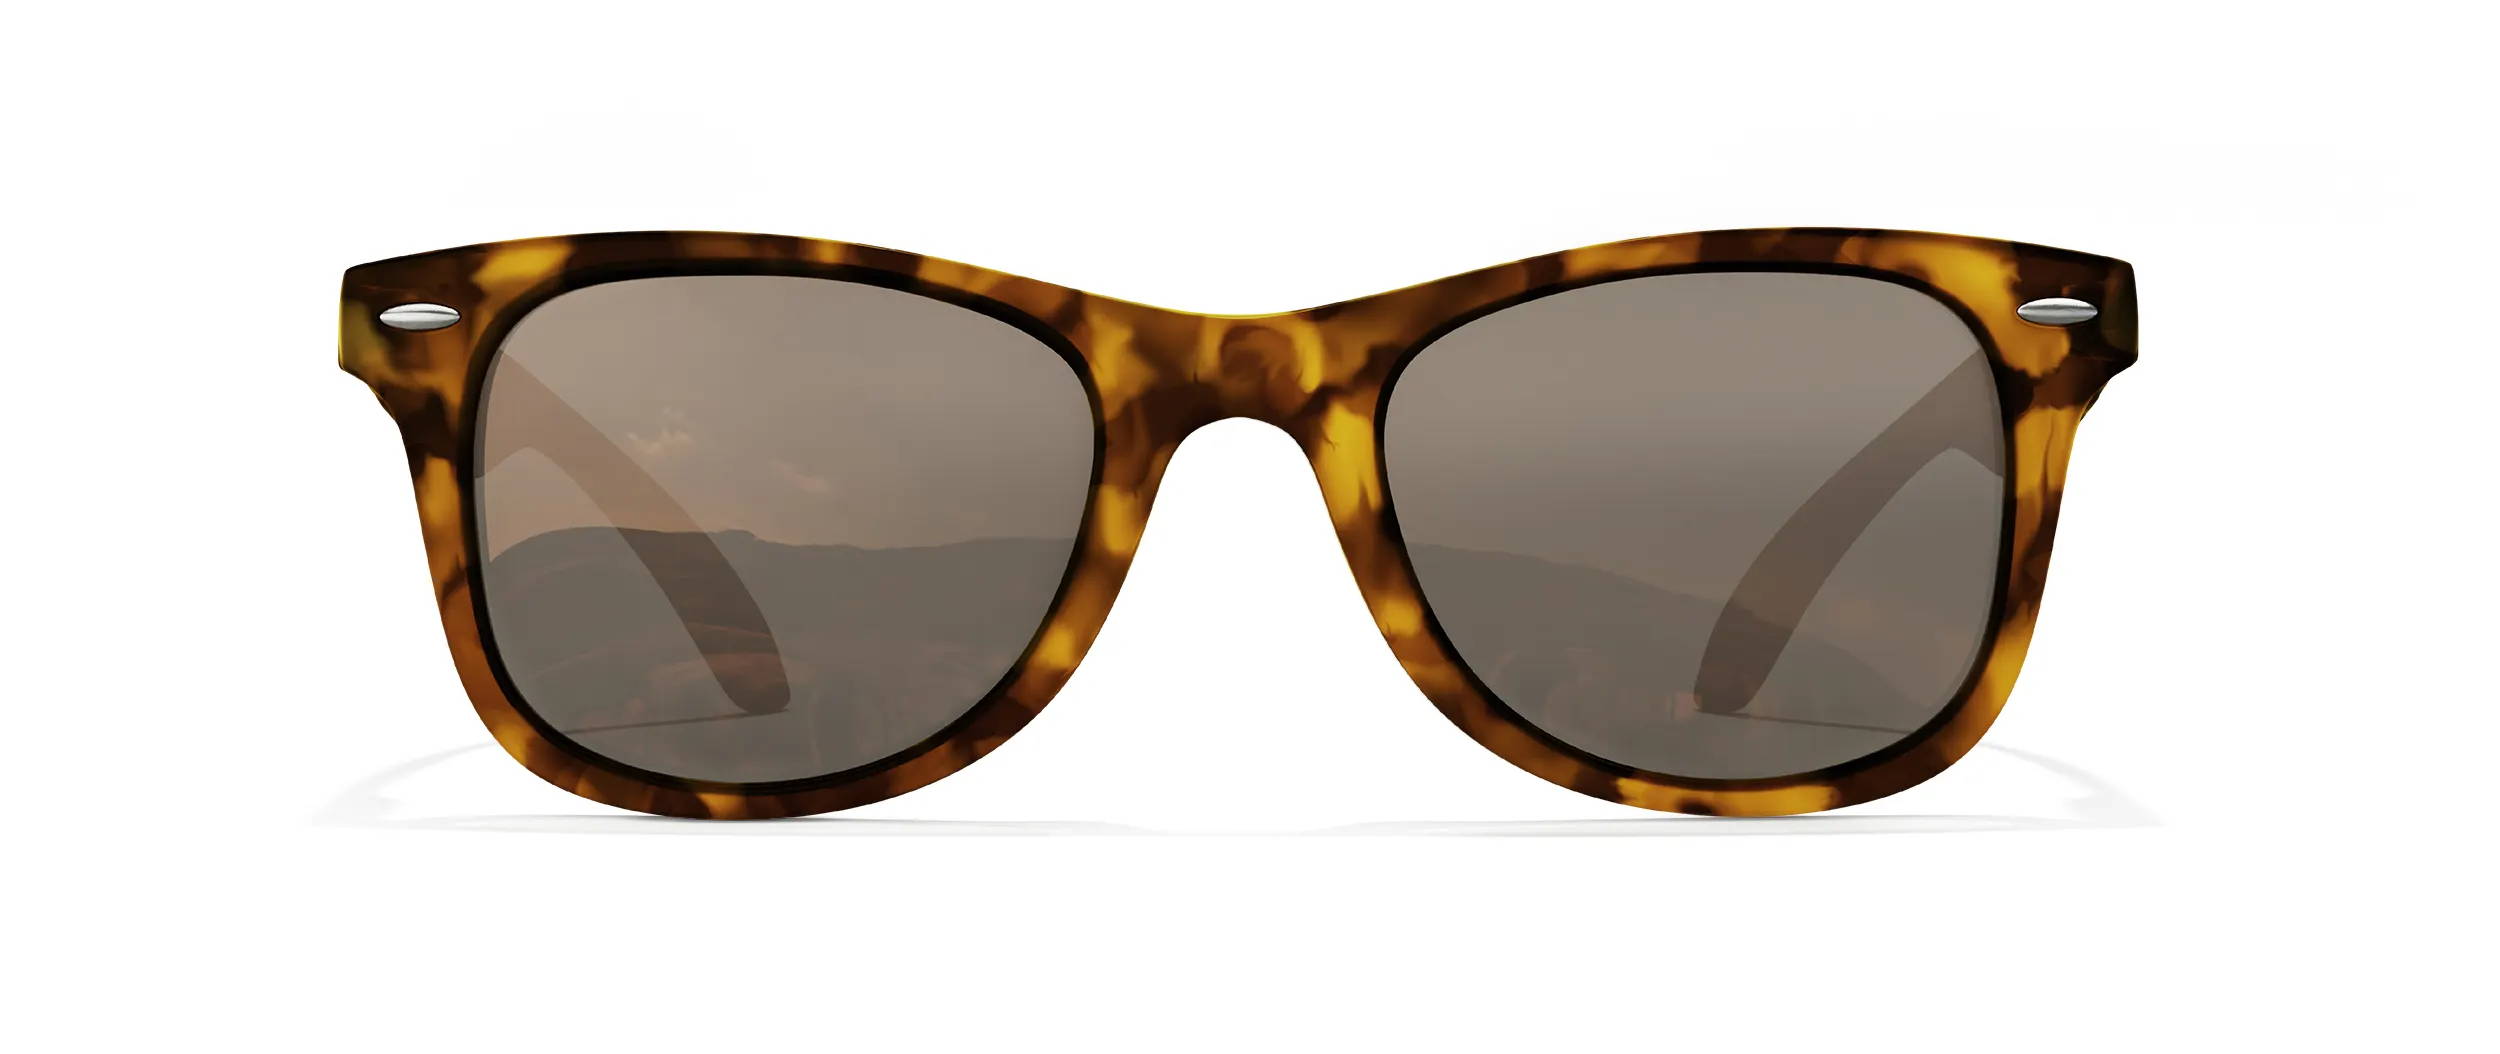 Tortoiseshell sunglasses with brown lenses